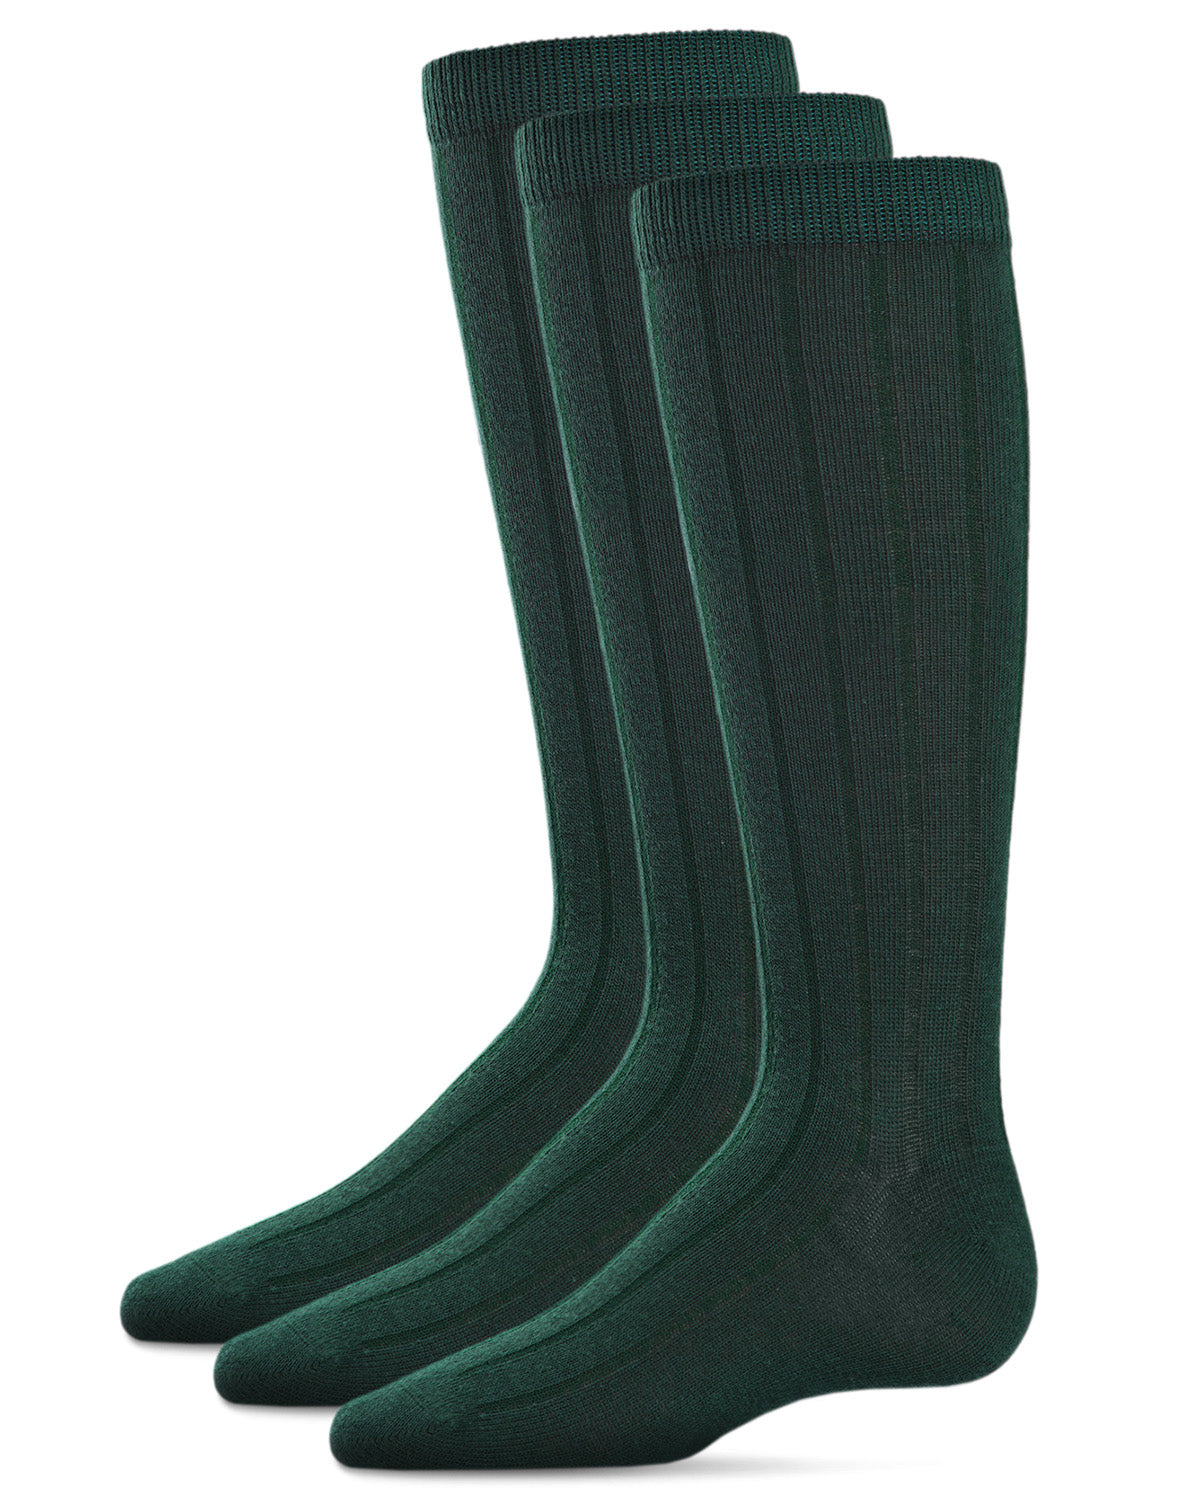 MeMoi Boys Cotton Dress Socks 3-Pack Navy 9-11 - image 2 of 7